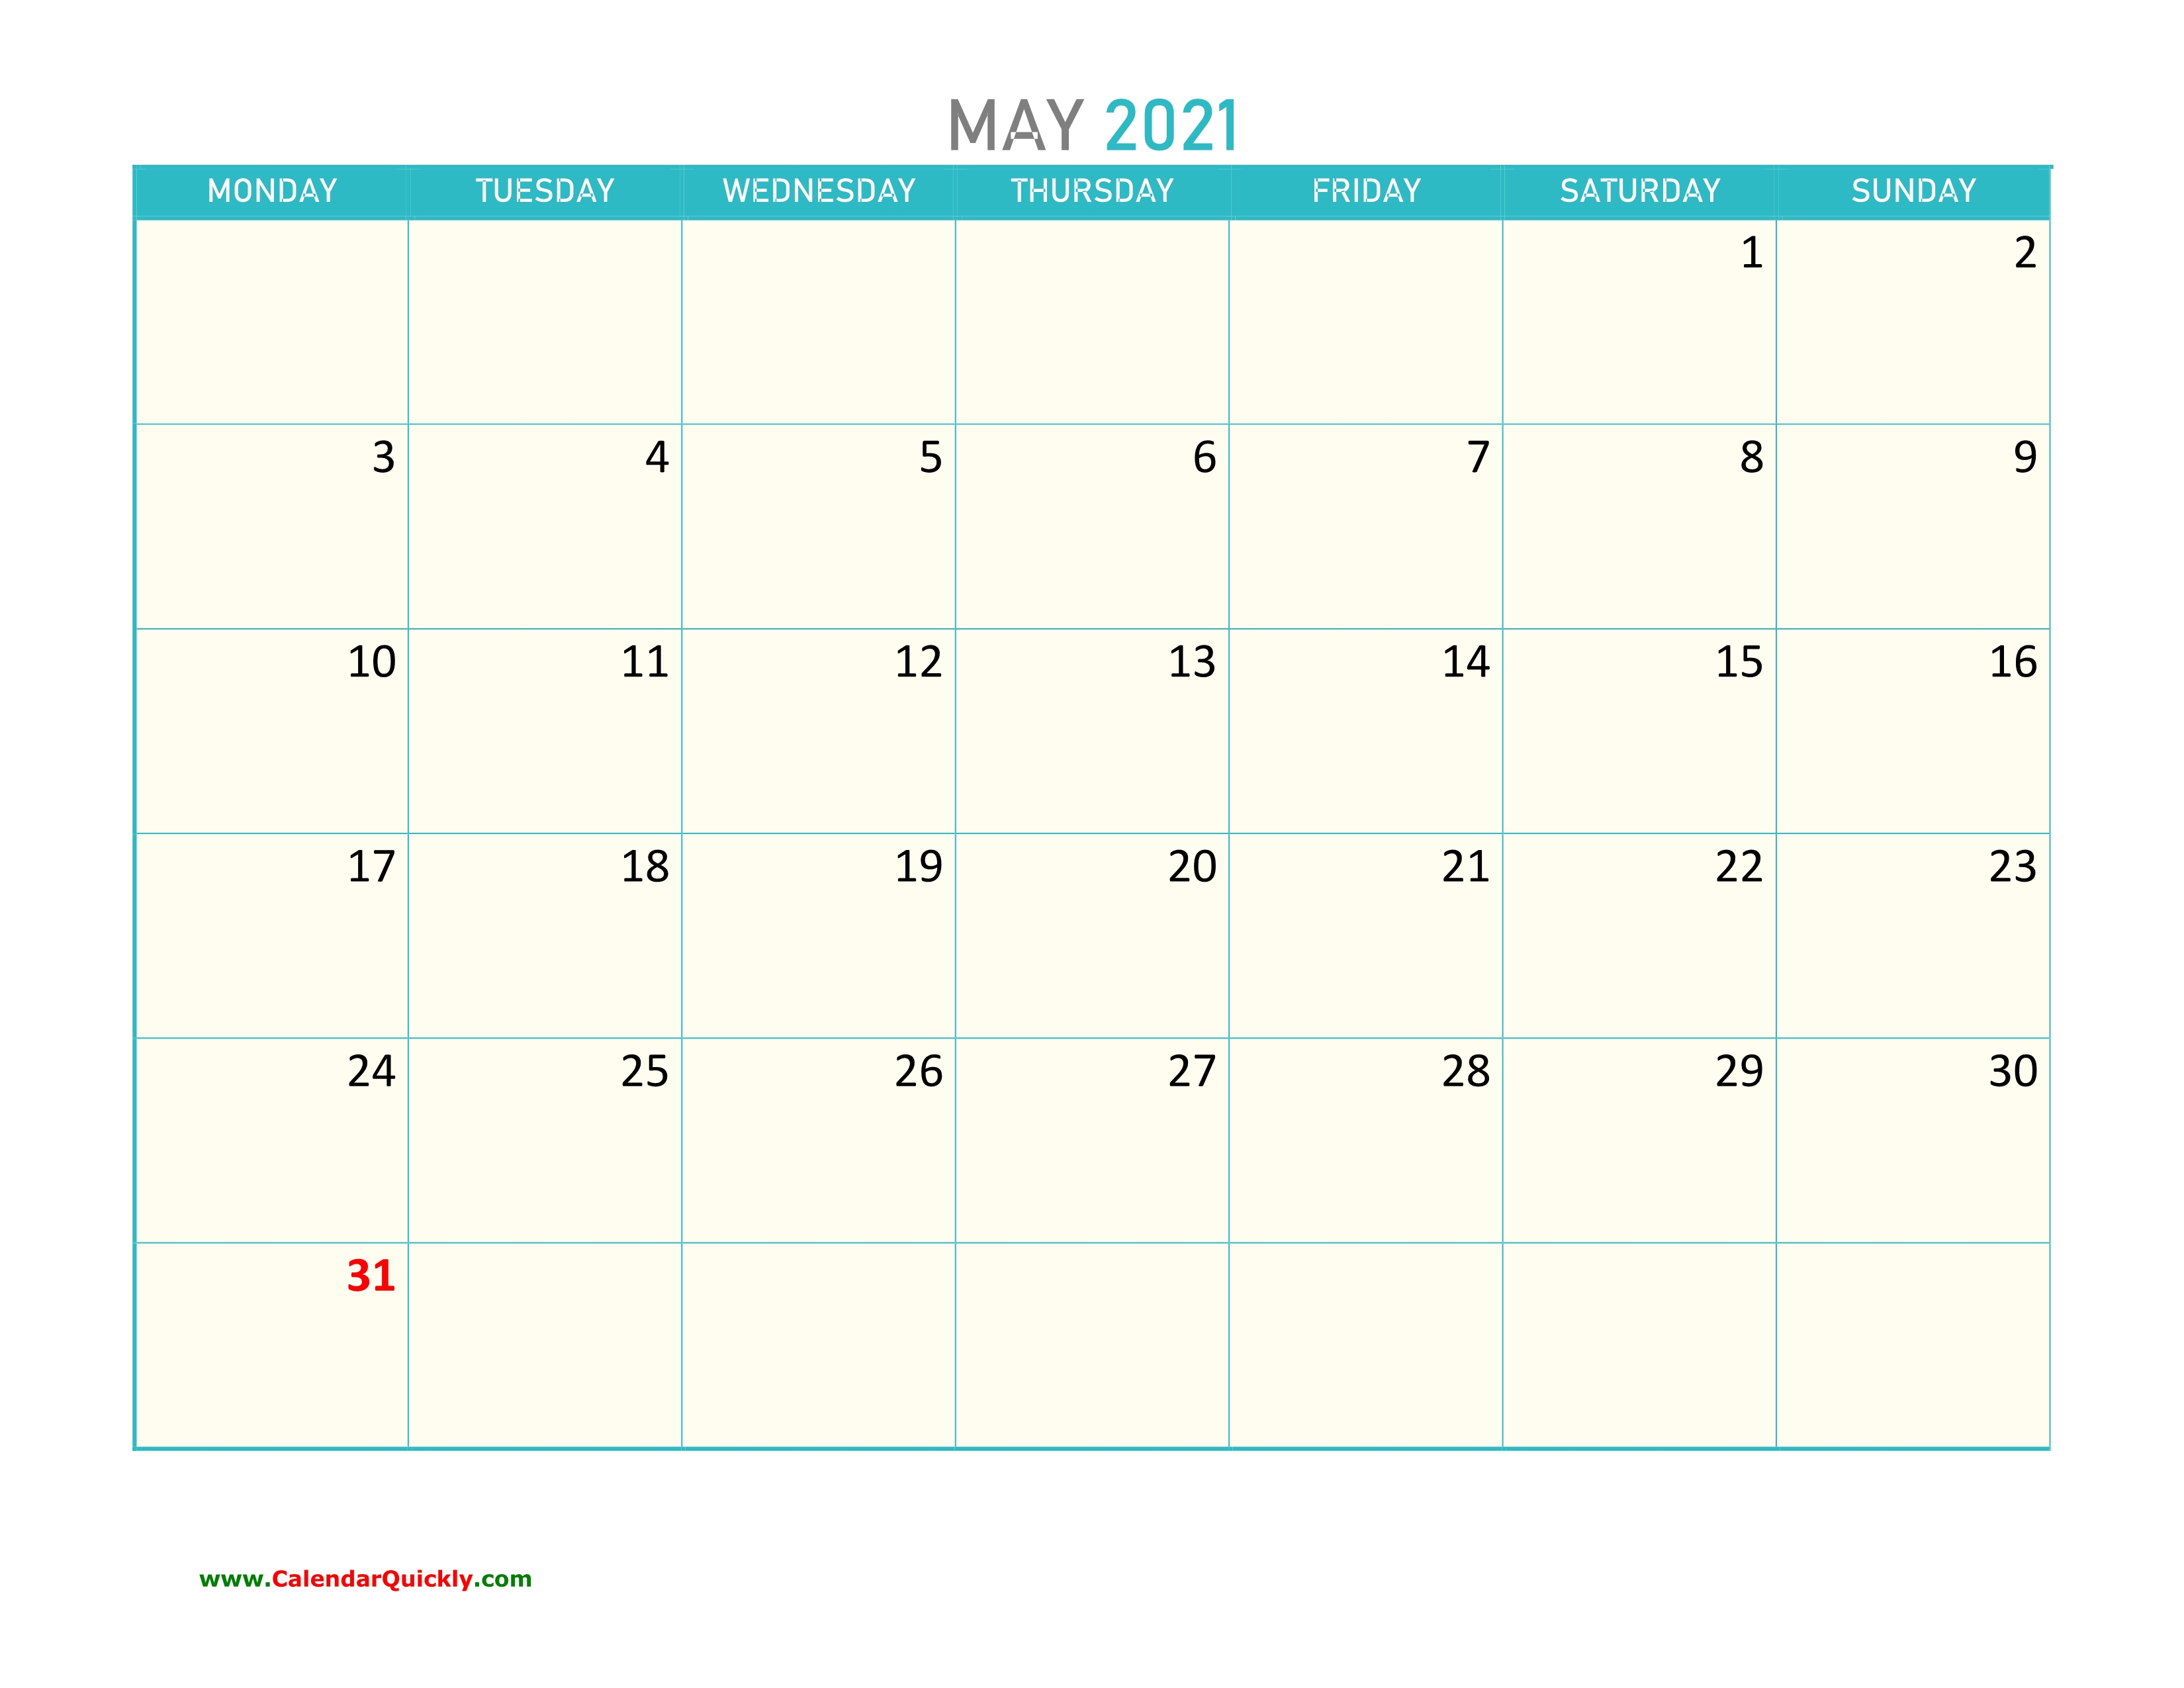 May Monday 2021 Calendar Printable | Calendar Quickly June 2021 Calendar Monday Start